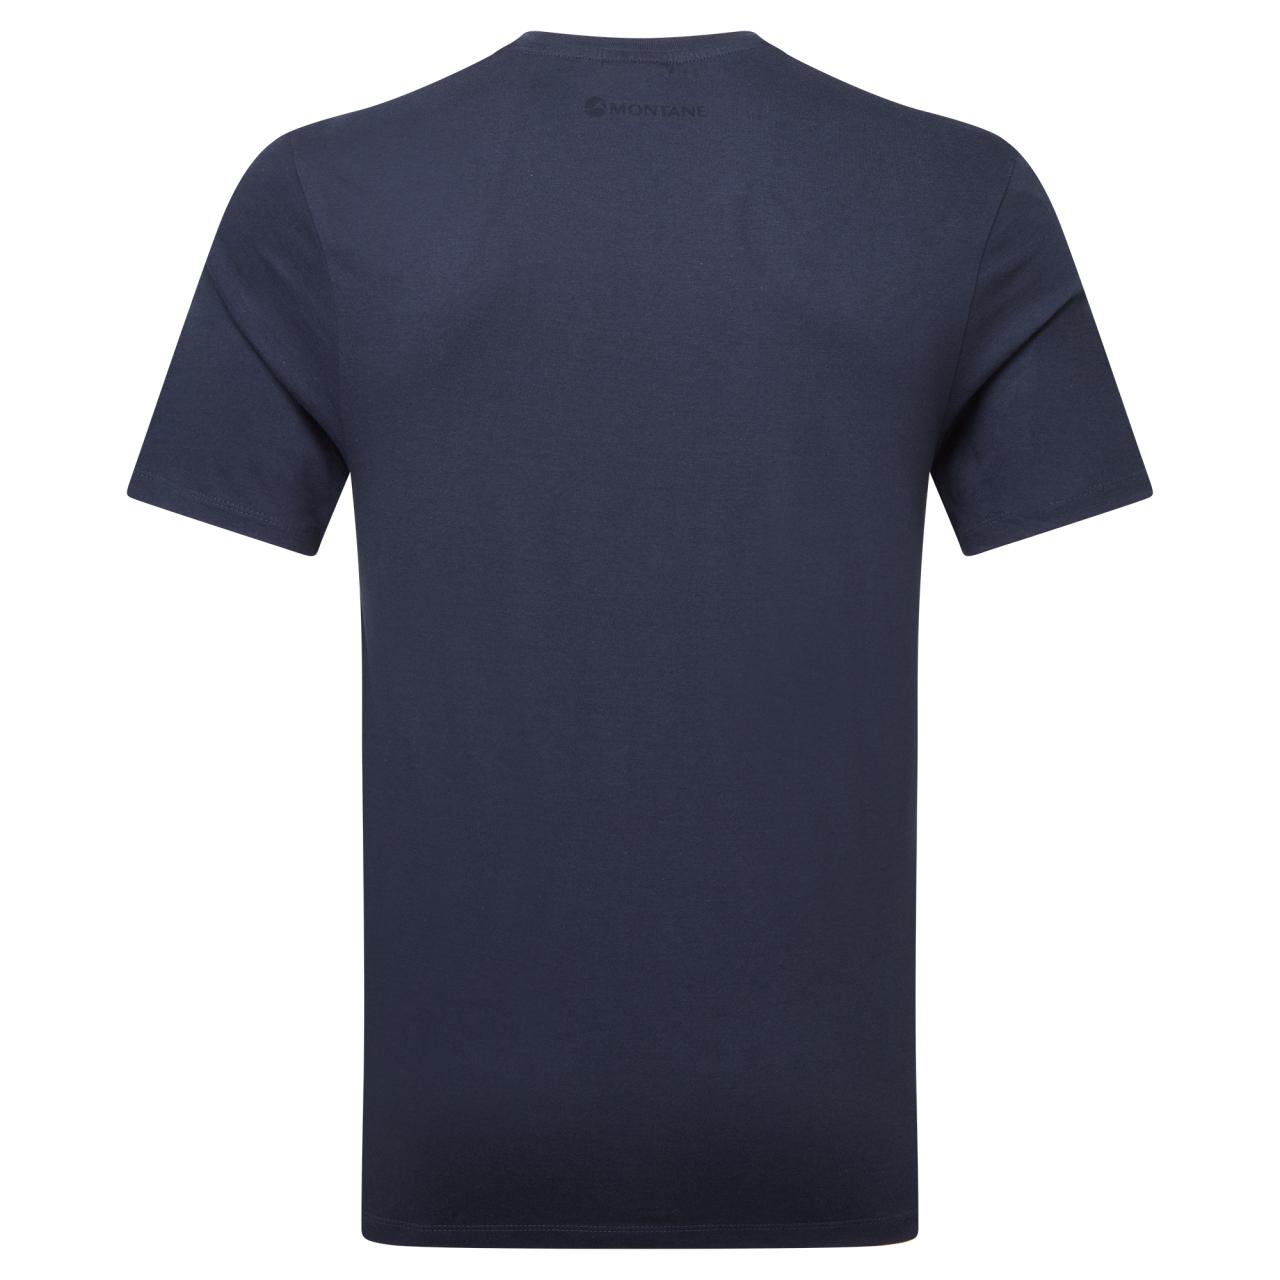 MONTANE MONO LOGO T-SHIRT-ECLIPSE BLUE-XL pánské tričko modré